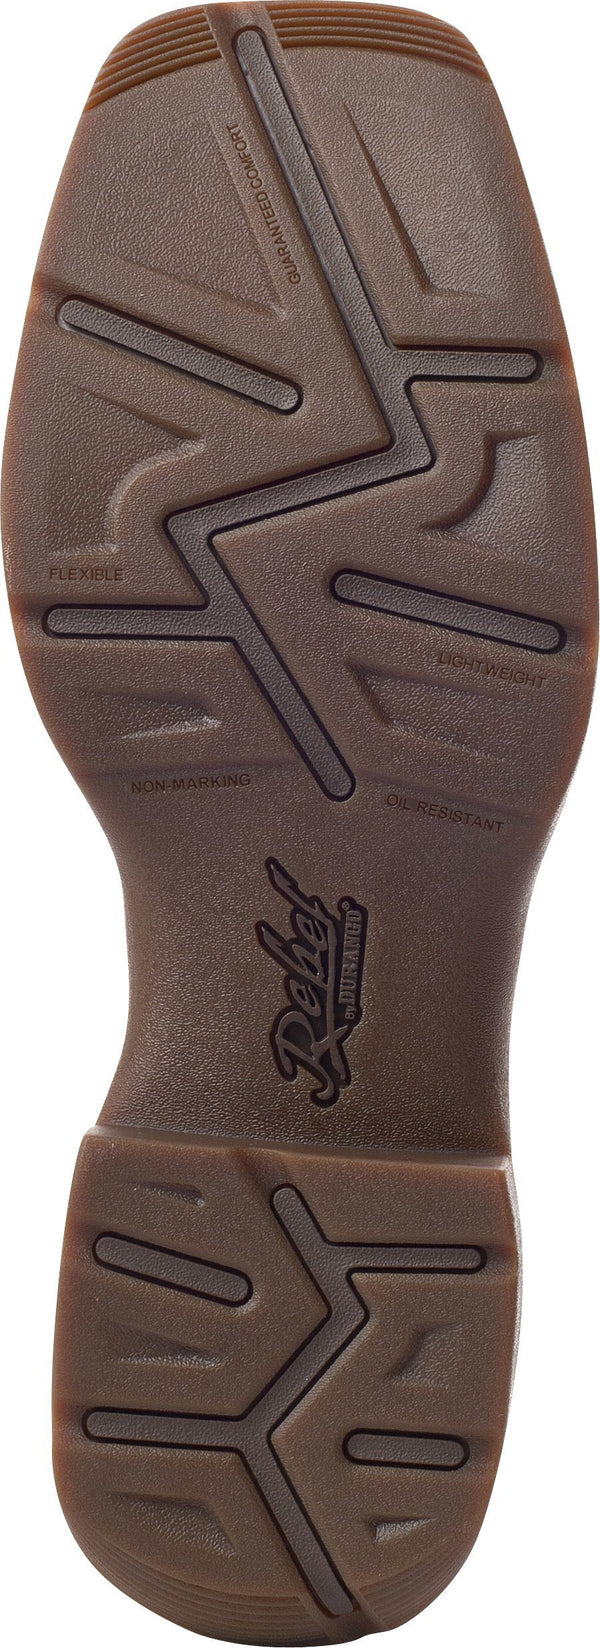 dark brown sole on boot